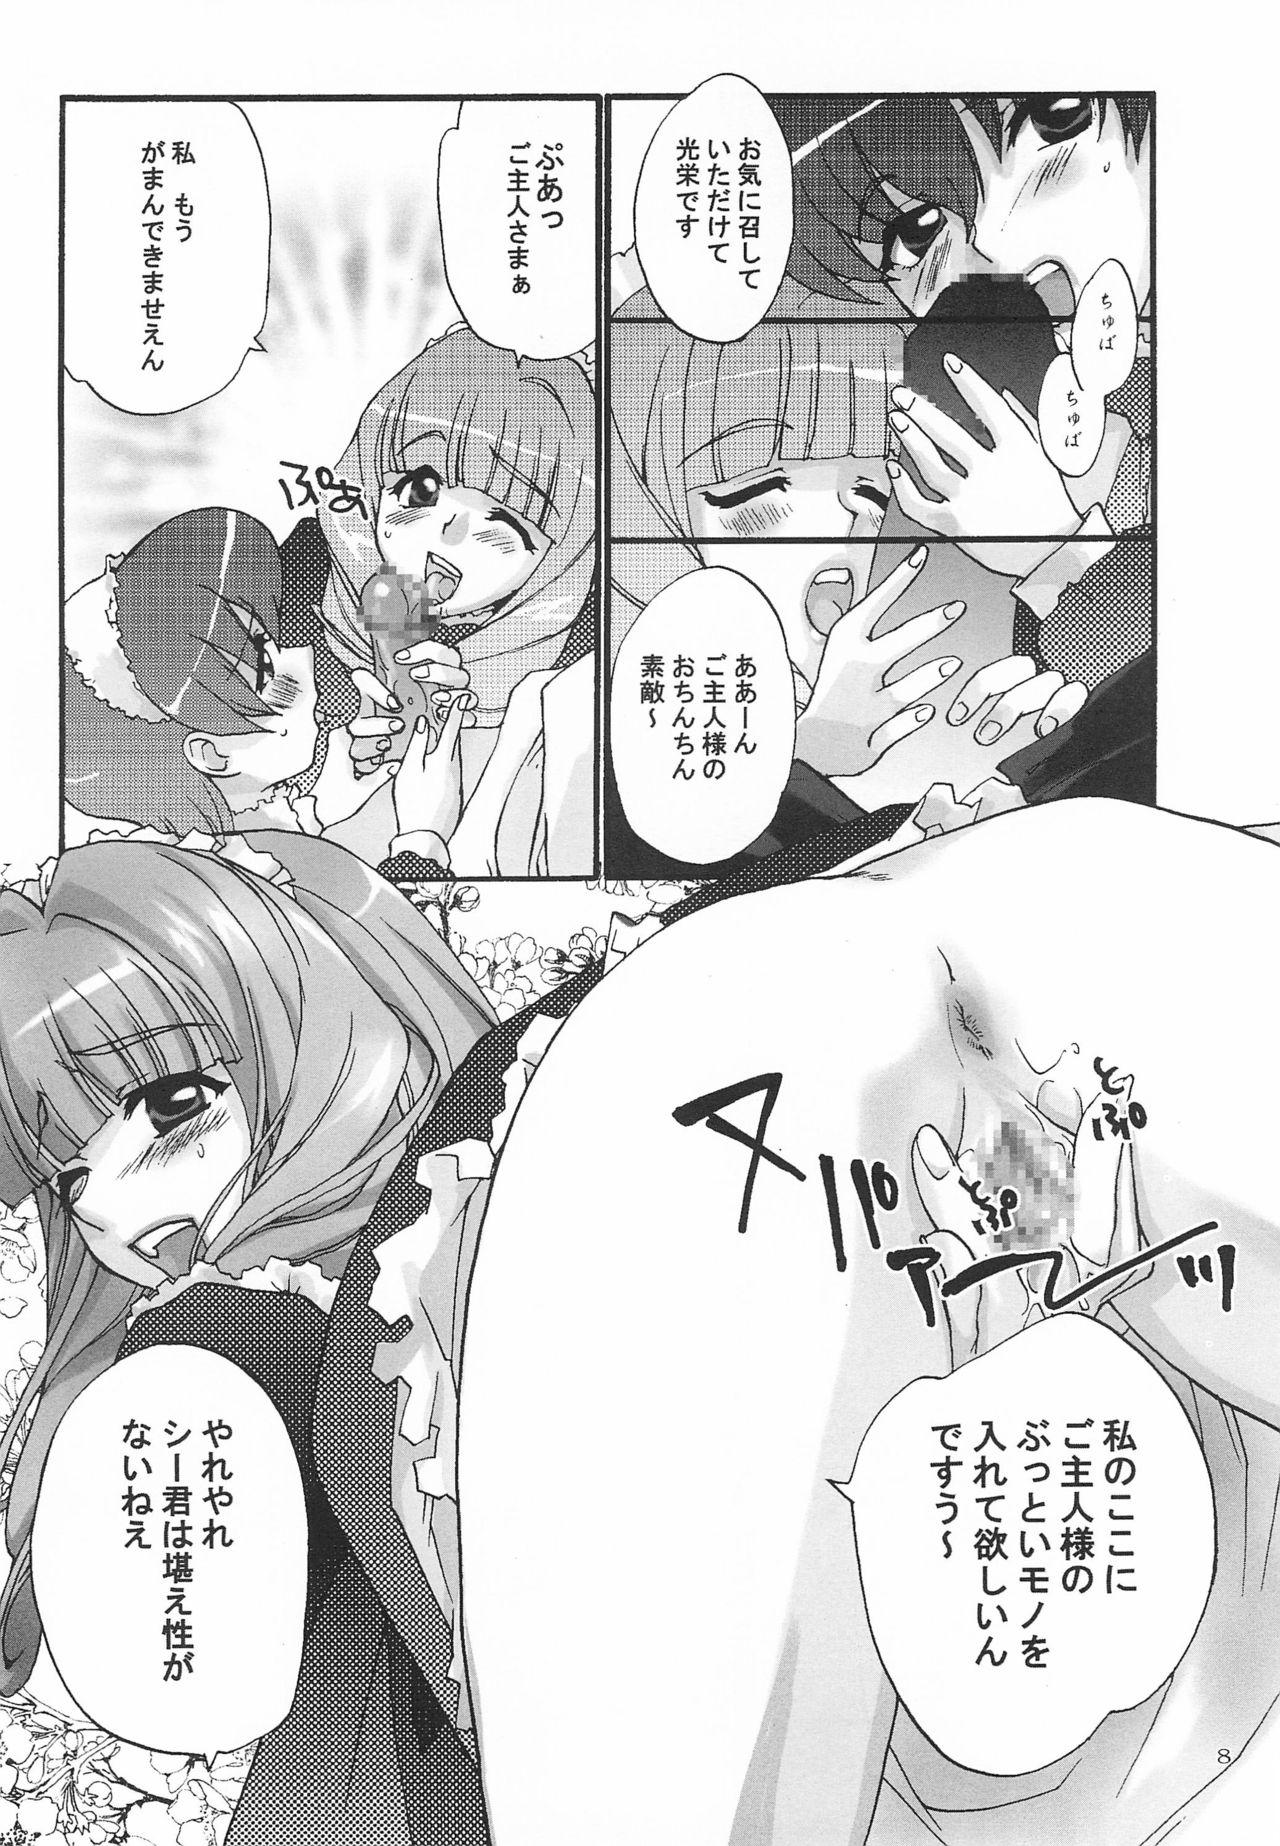 Spank Alleluia - Sakura taisen | sakura wars Softcore - Page 10